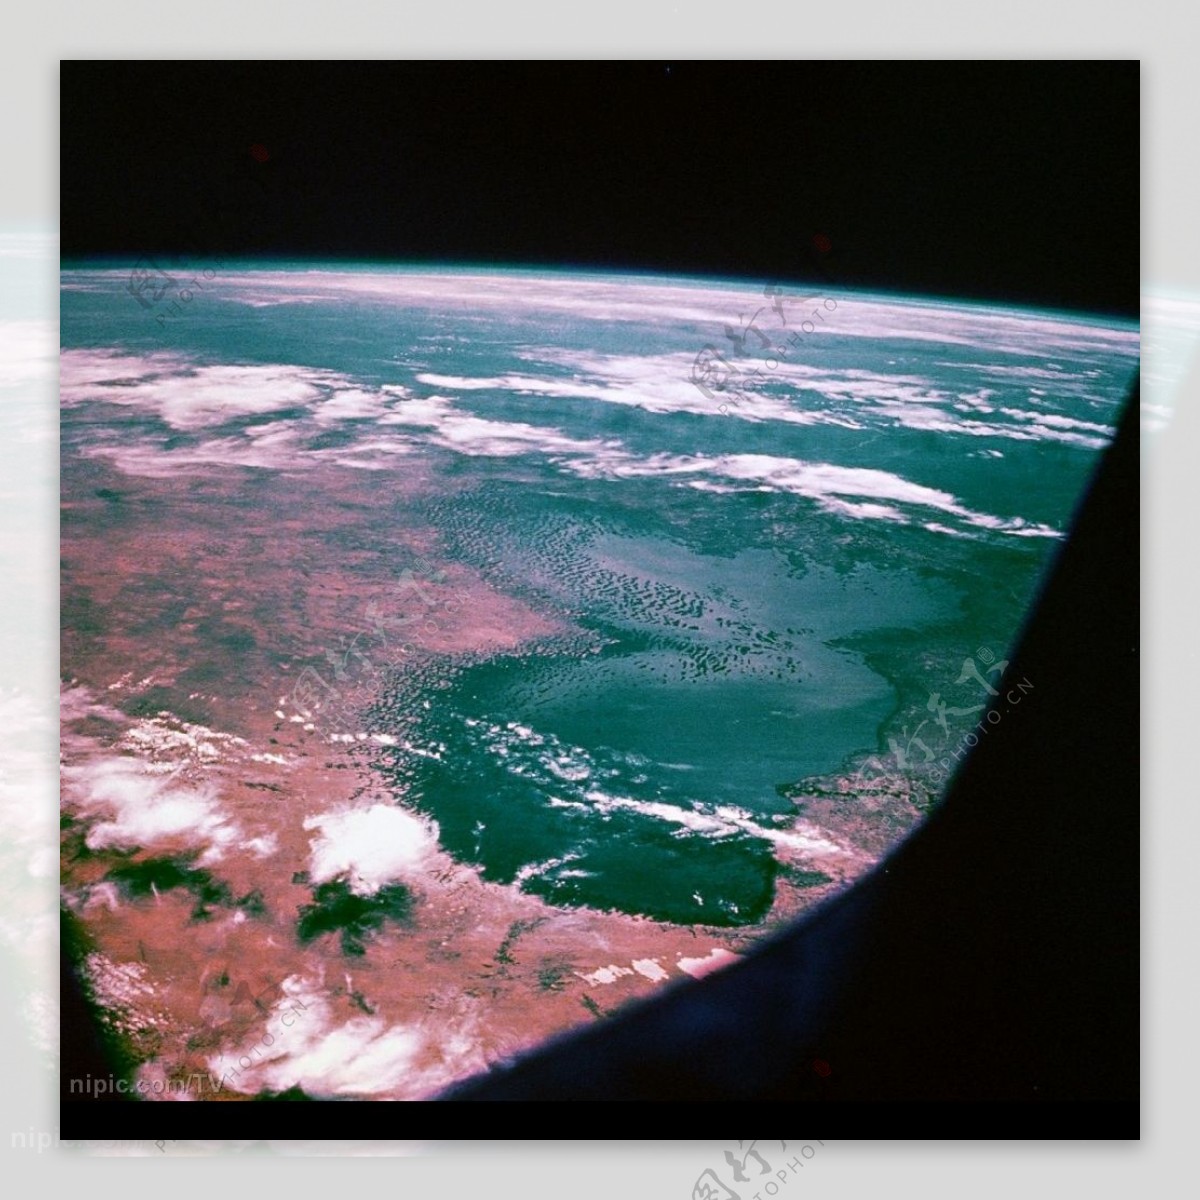 太空中看地球照片图片